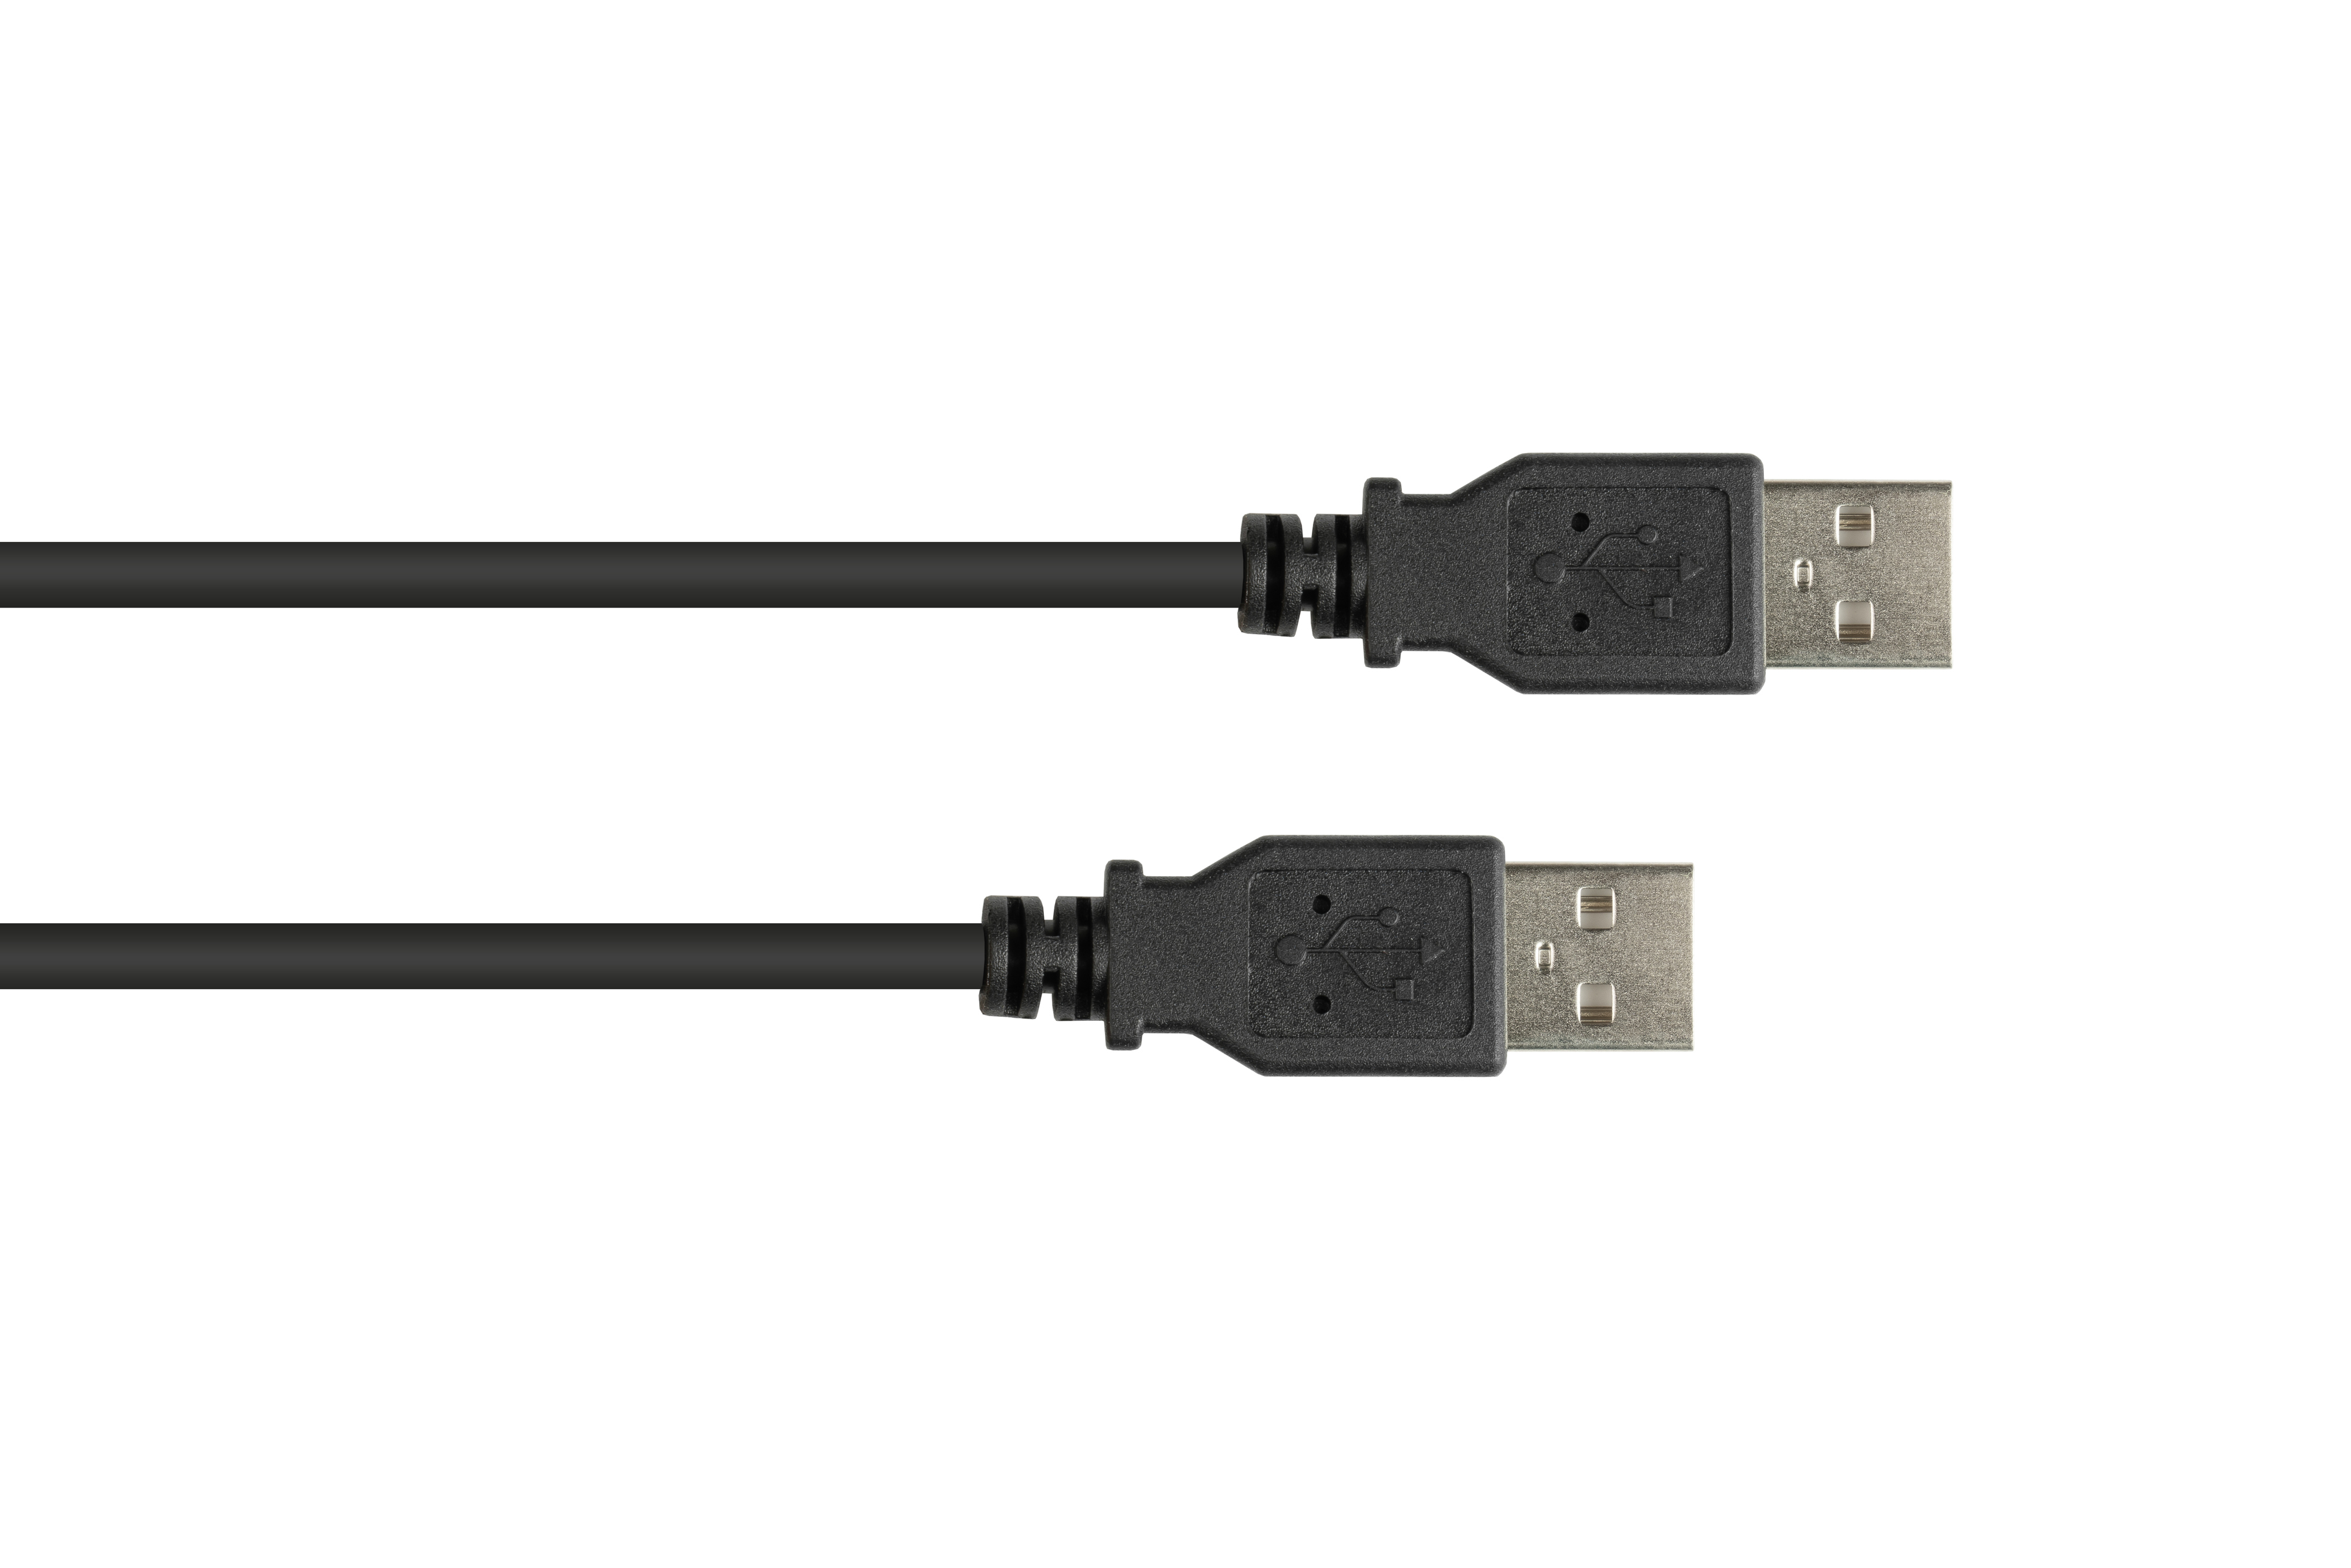 GOOD CONNECTIONS USB 2.0 Stecker A, A an schwarz Stecker Anschlusskabel